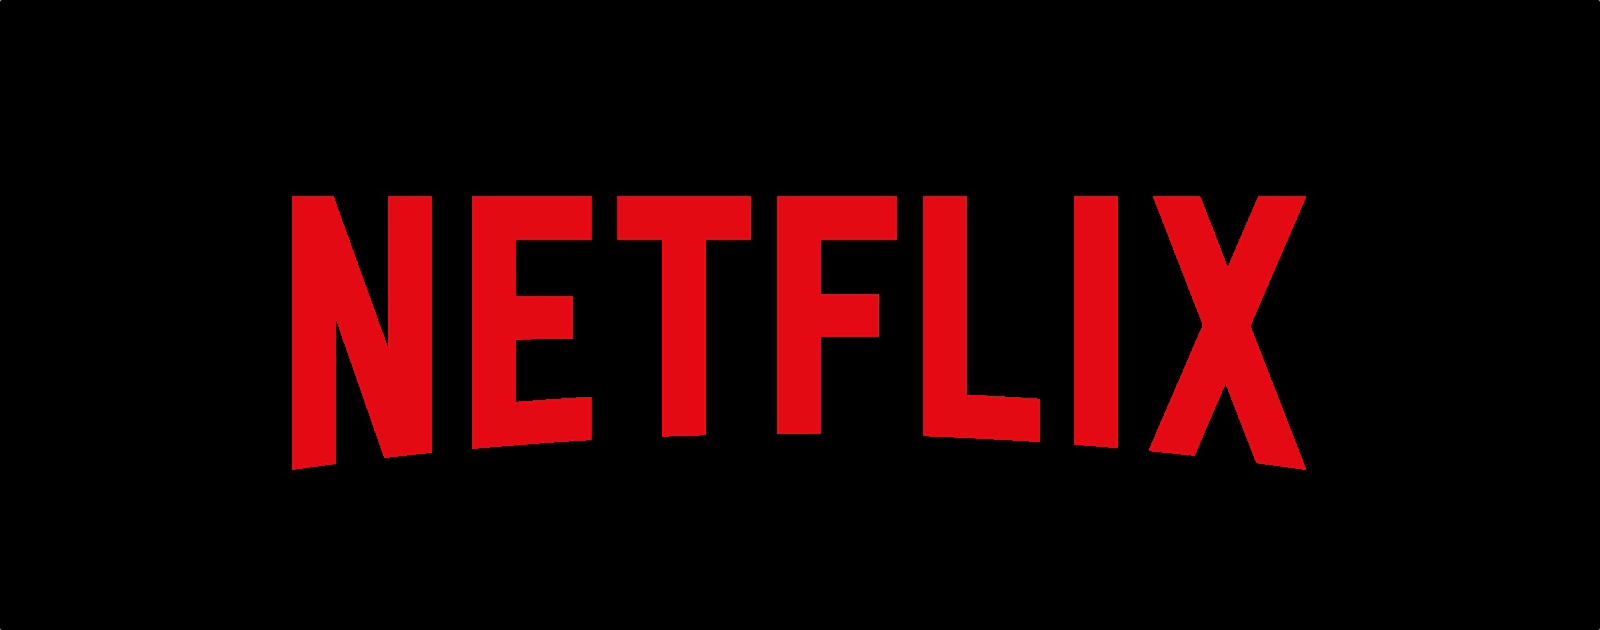 How To Offline Download Netflix On Mac